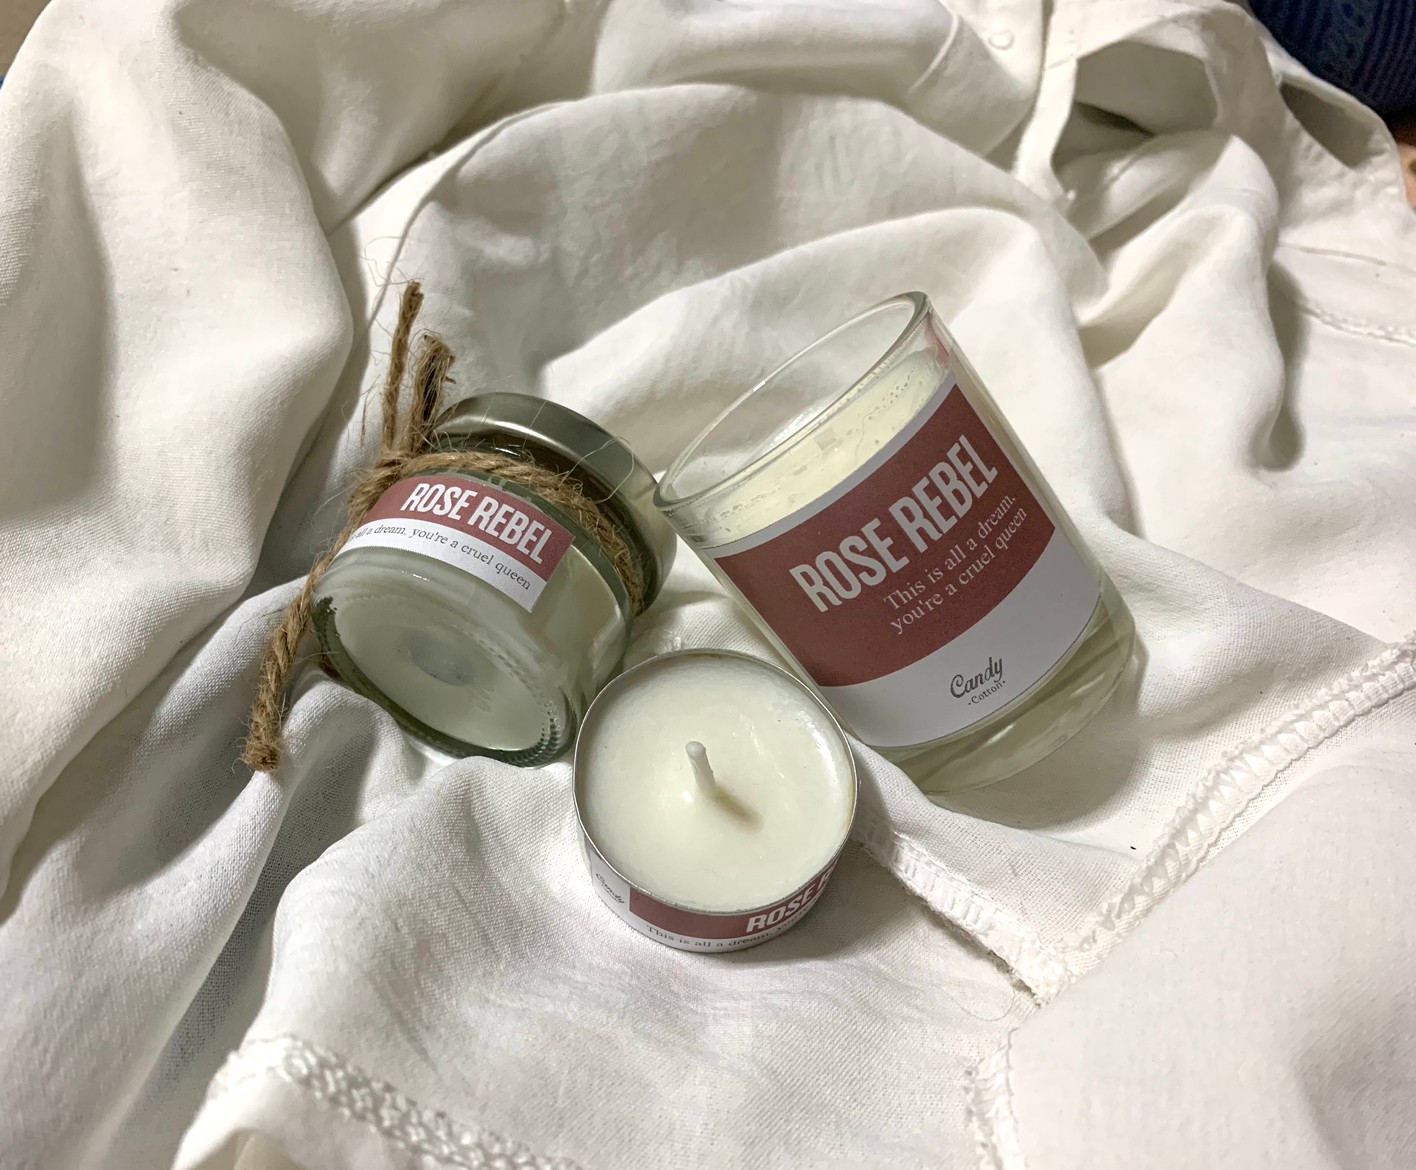 เทียนหอม กลิ่น โรส ราเบล - Soy Candle Rose Rabel เทียนหอมไขถั่วเหลือง เทียน ของขวัญให้คนที่คุณรัก กลิ่นกุหลาบ หอมชวนหลงใหล